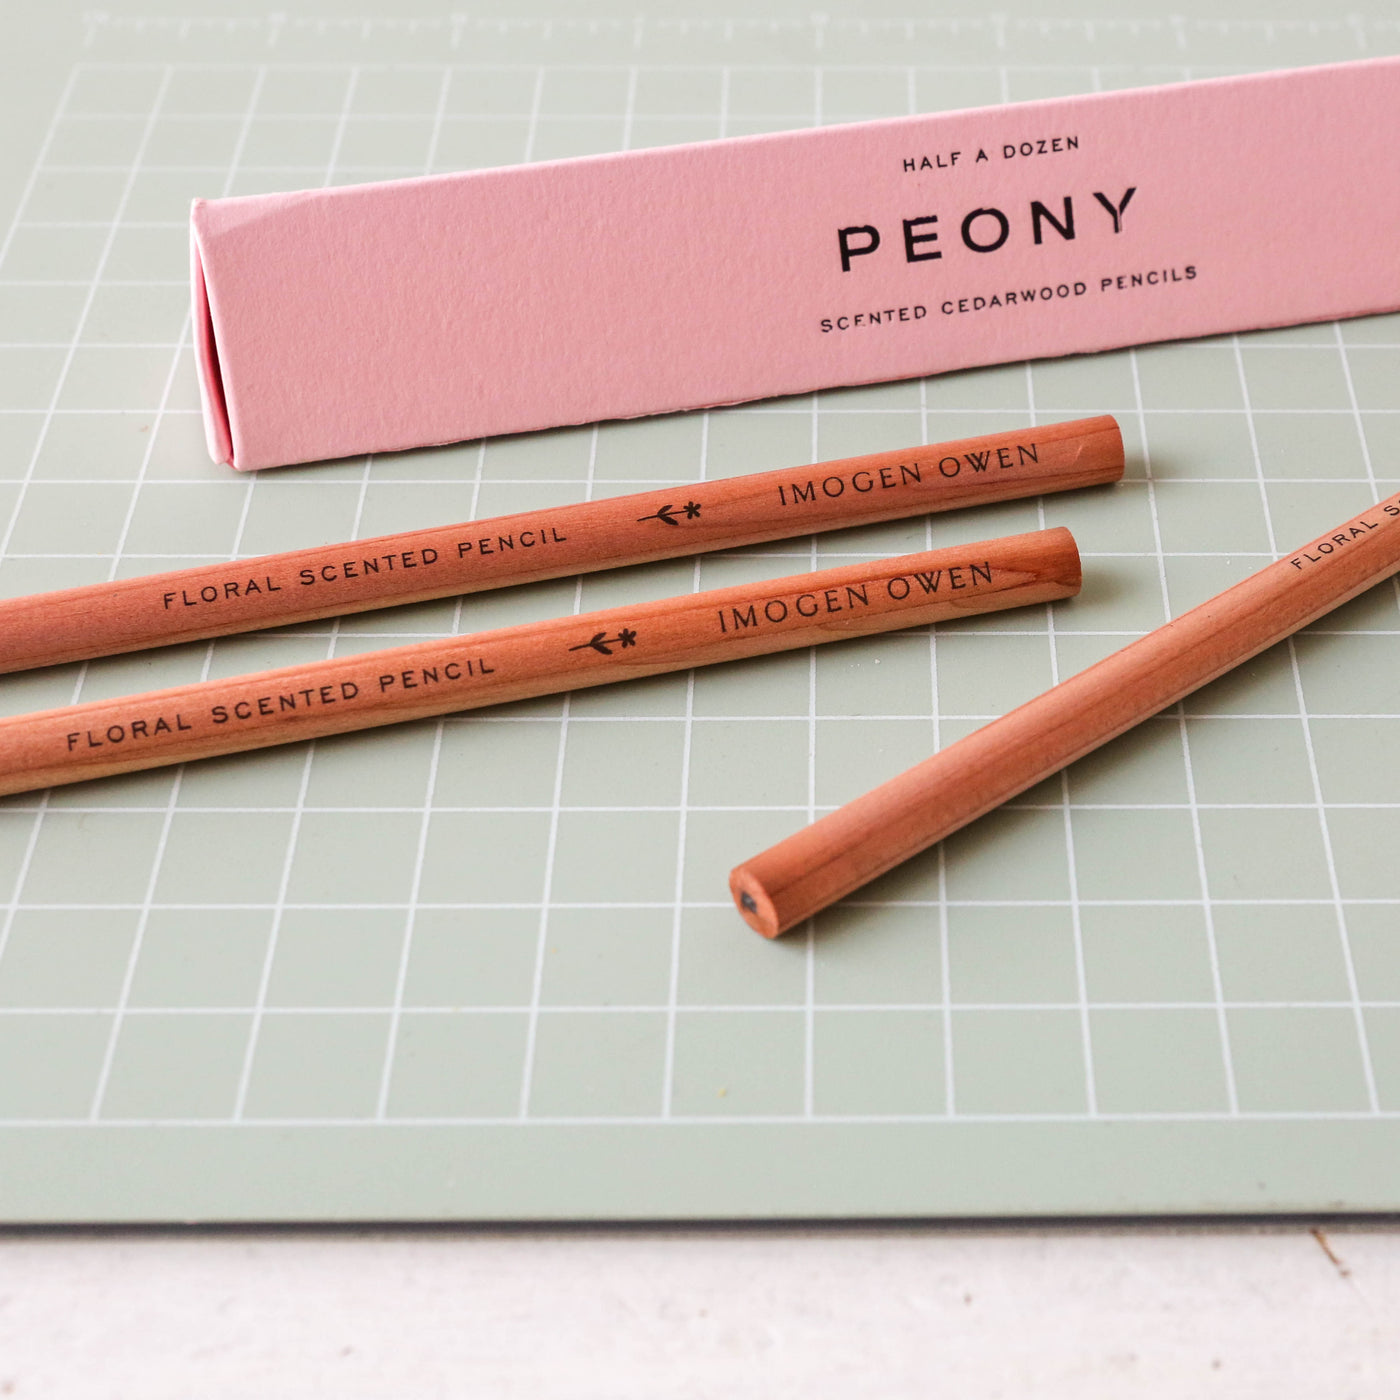 Imogen Owen Scented Pencils - Peony